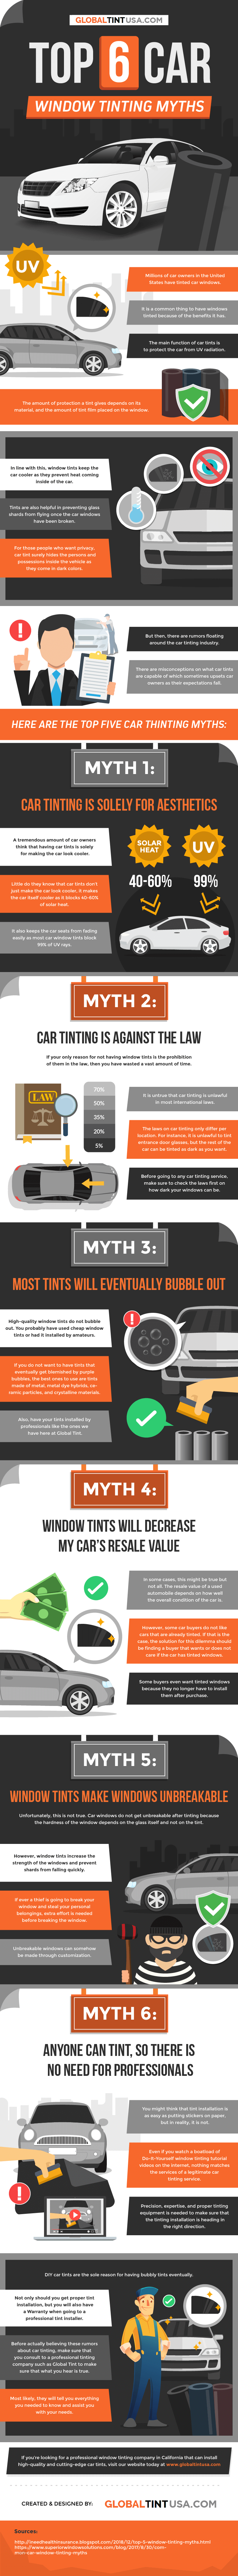 Top-6-car-window-tinting-myths-